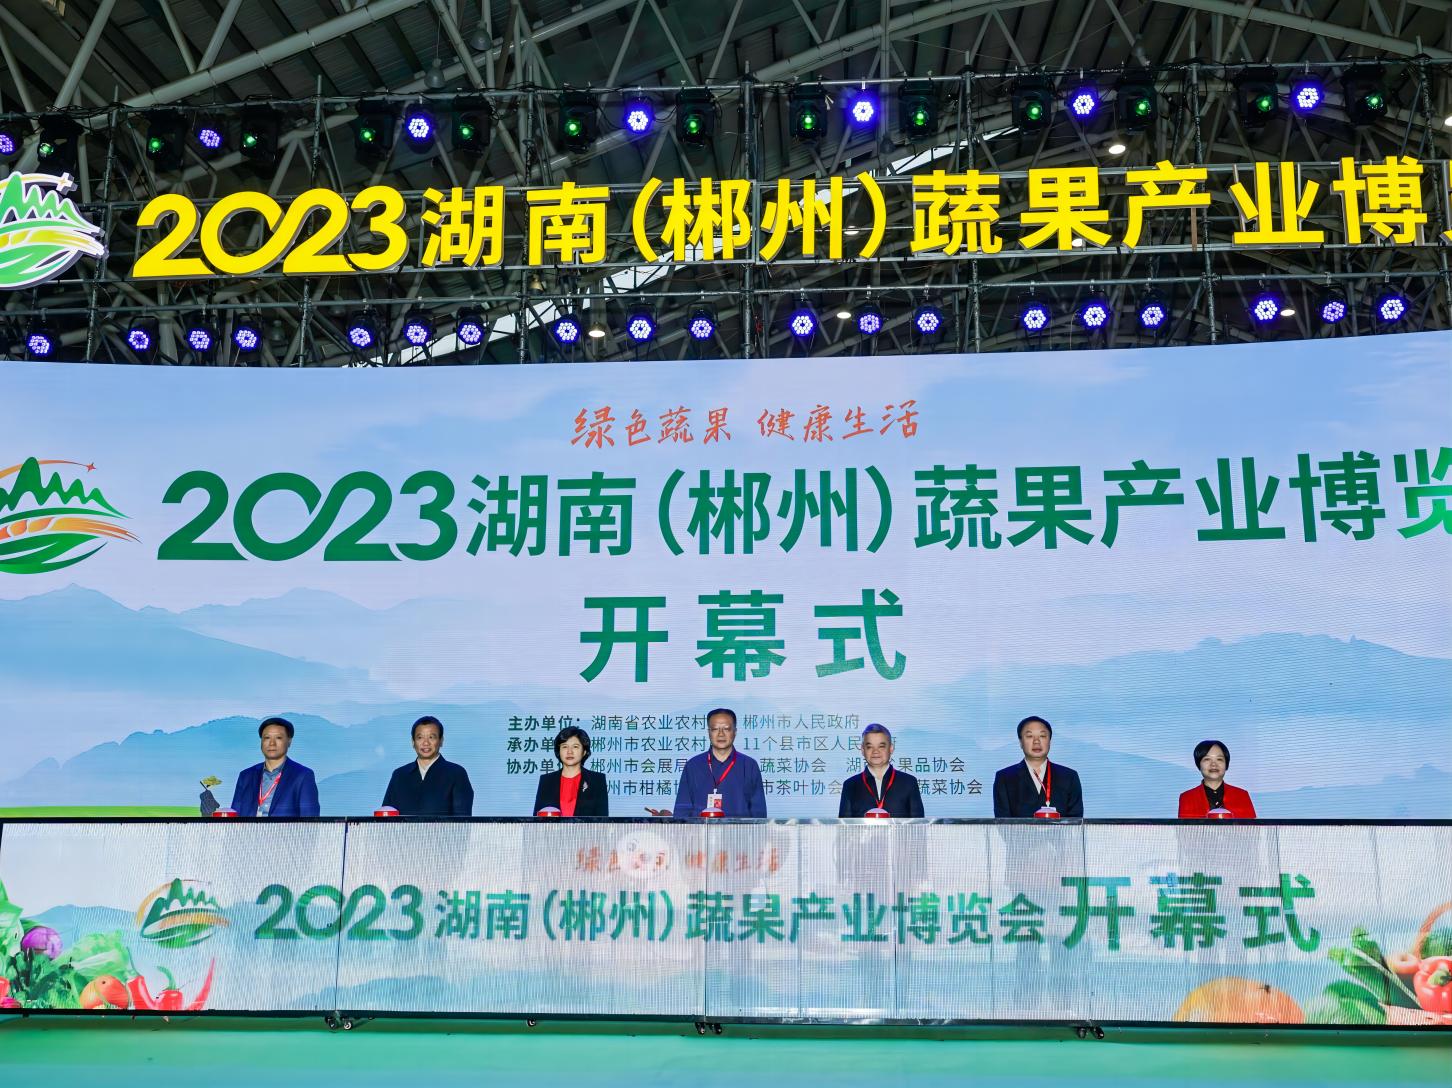 2023湖南(郴州) 蔬果产业博览会